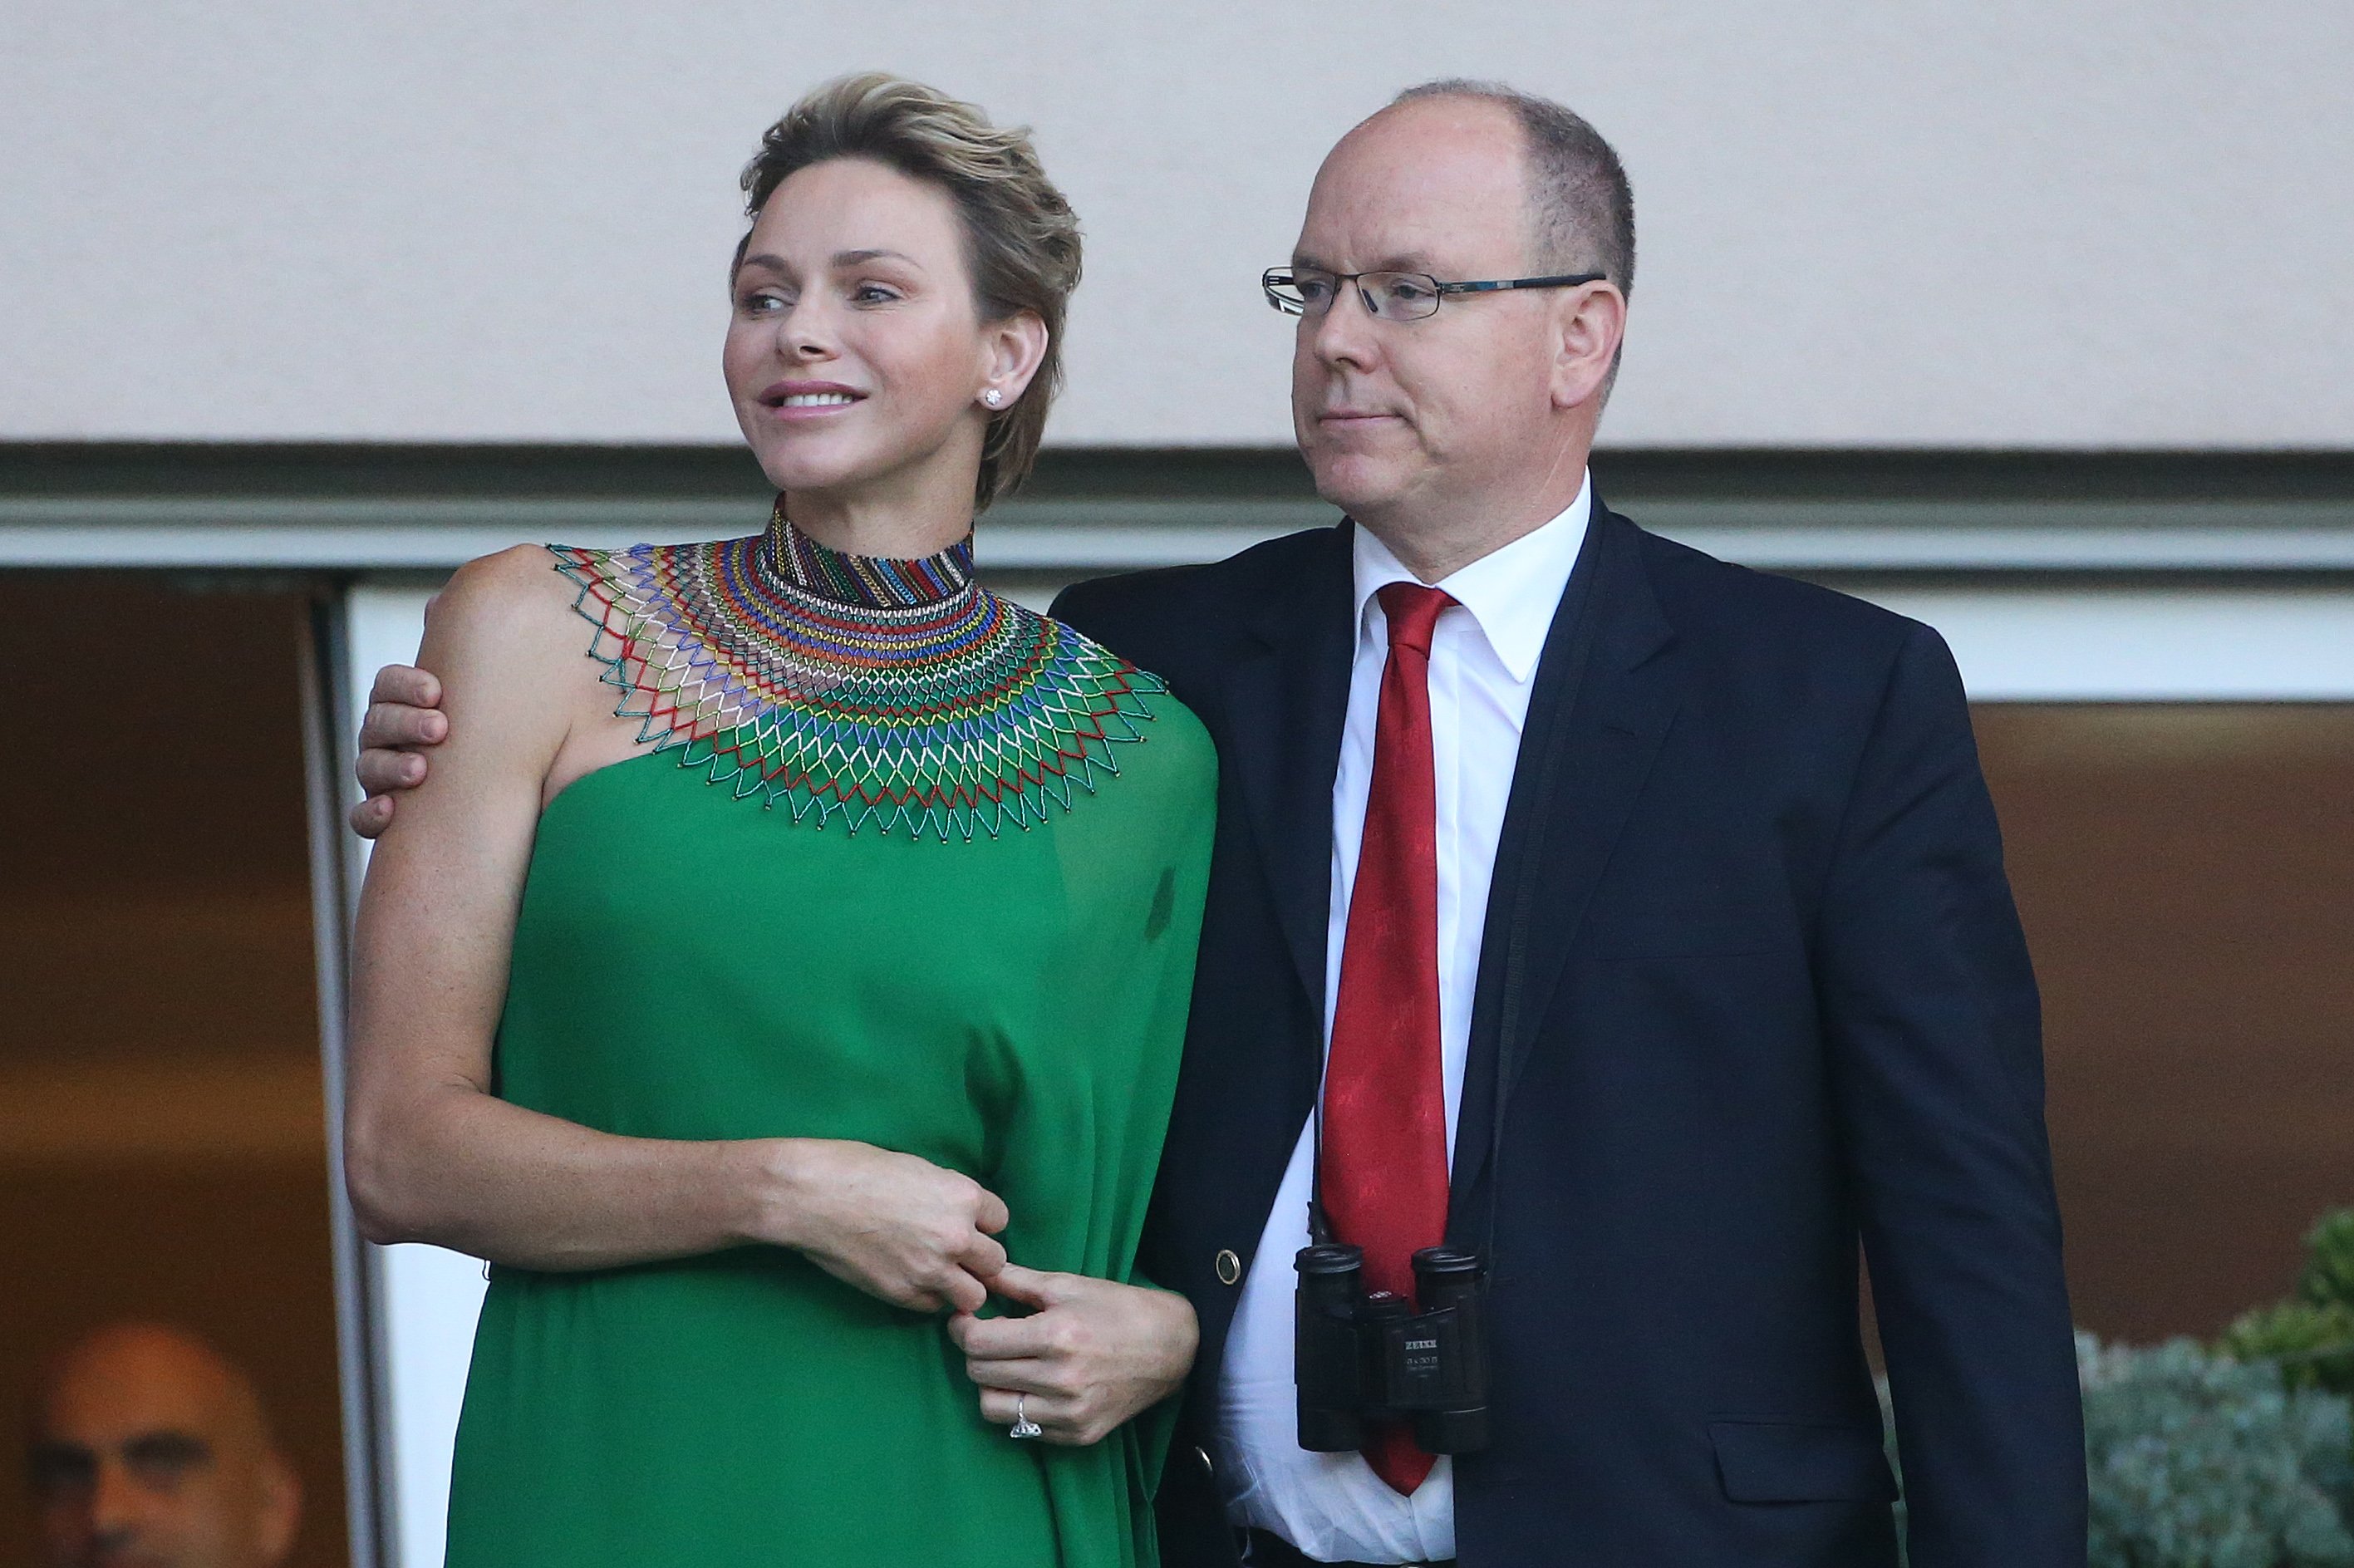 Prince Albert II of Monaco and Princess Charlene of Monaco on July 21, 2017, in Monaco, Monaco. | Source: Getty Images.